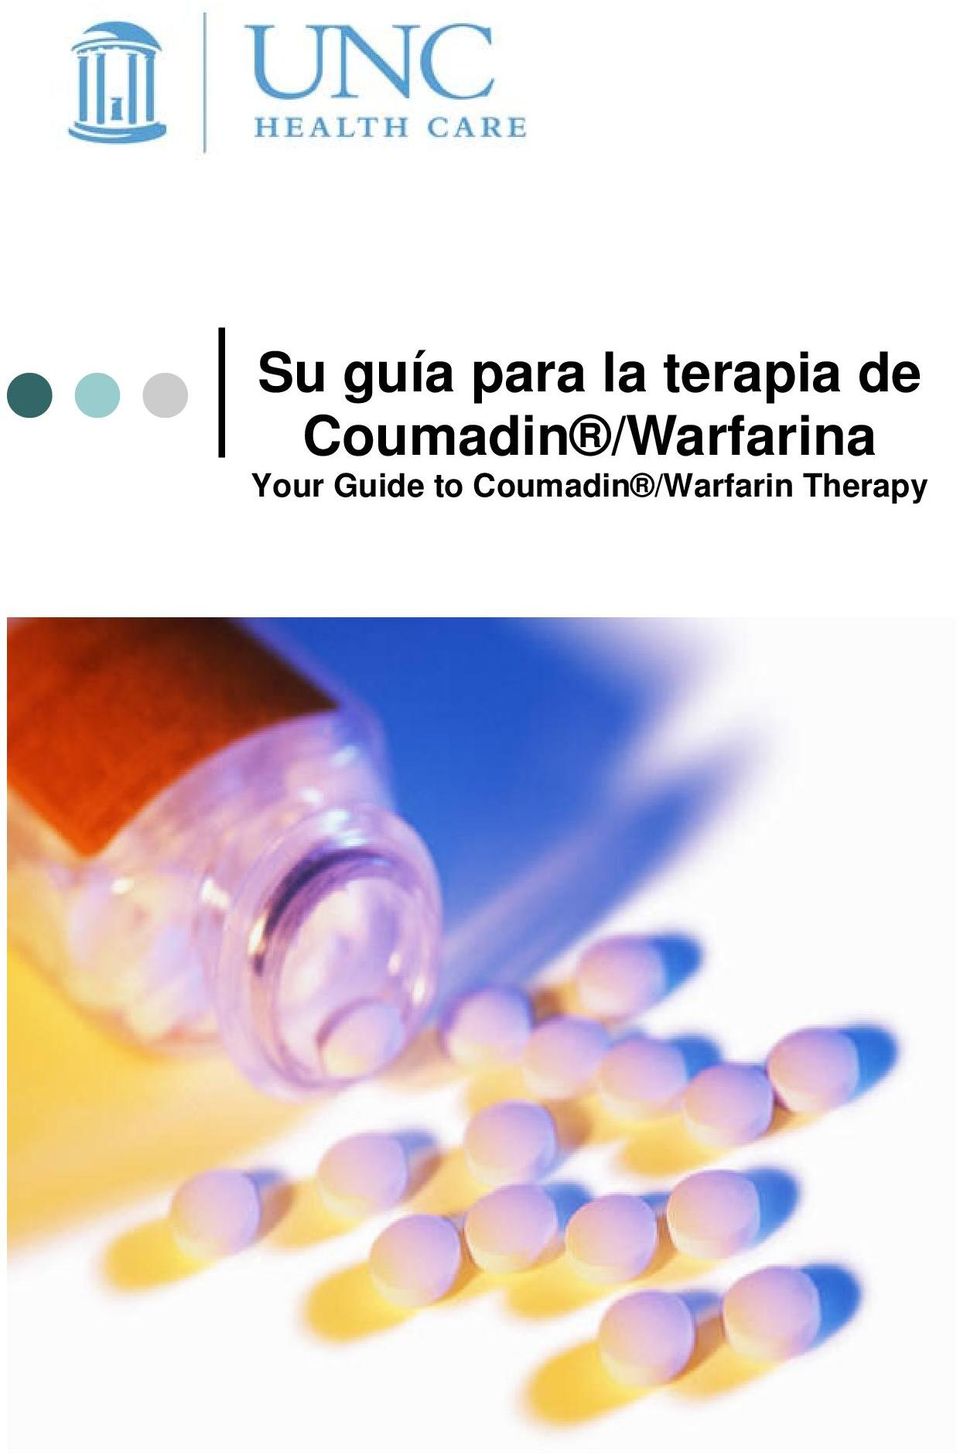 /Warfarina Your Guide